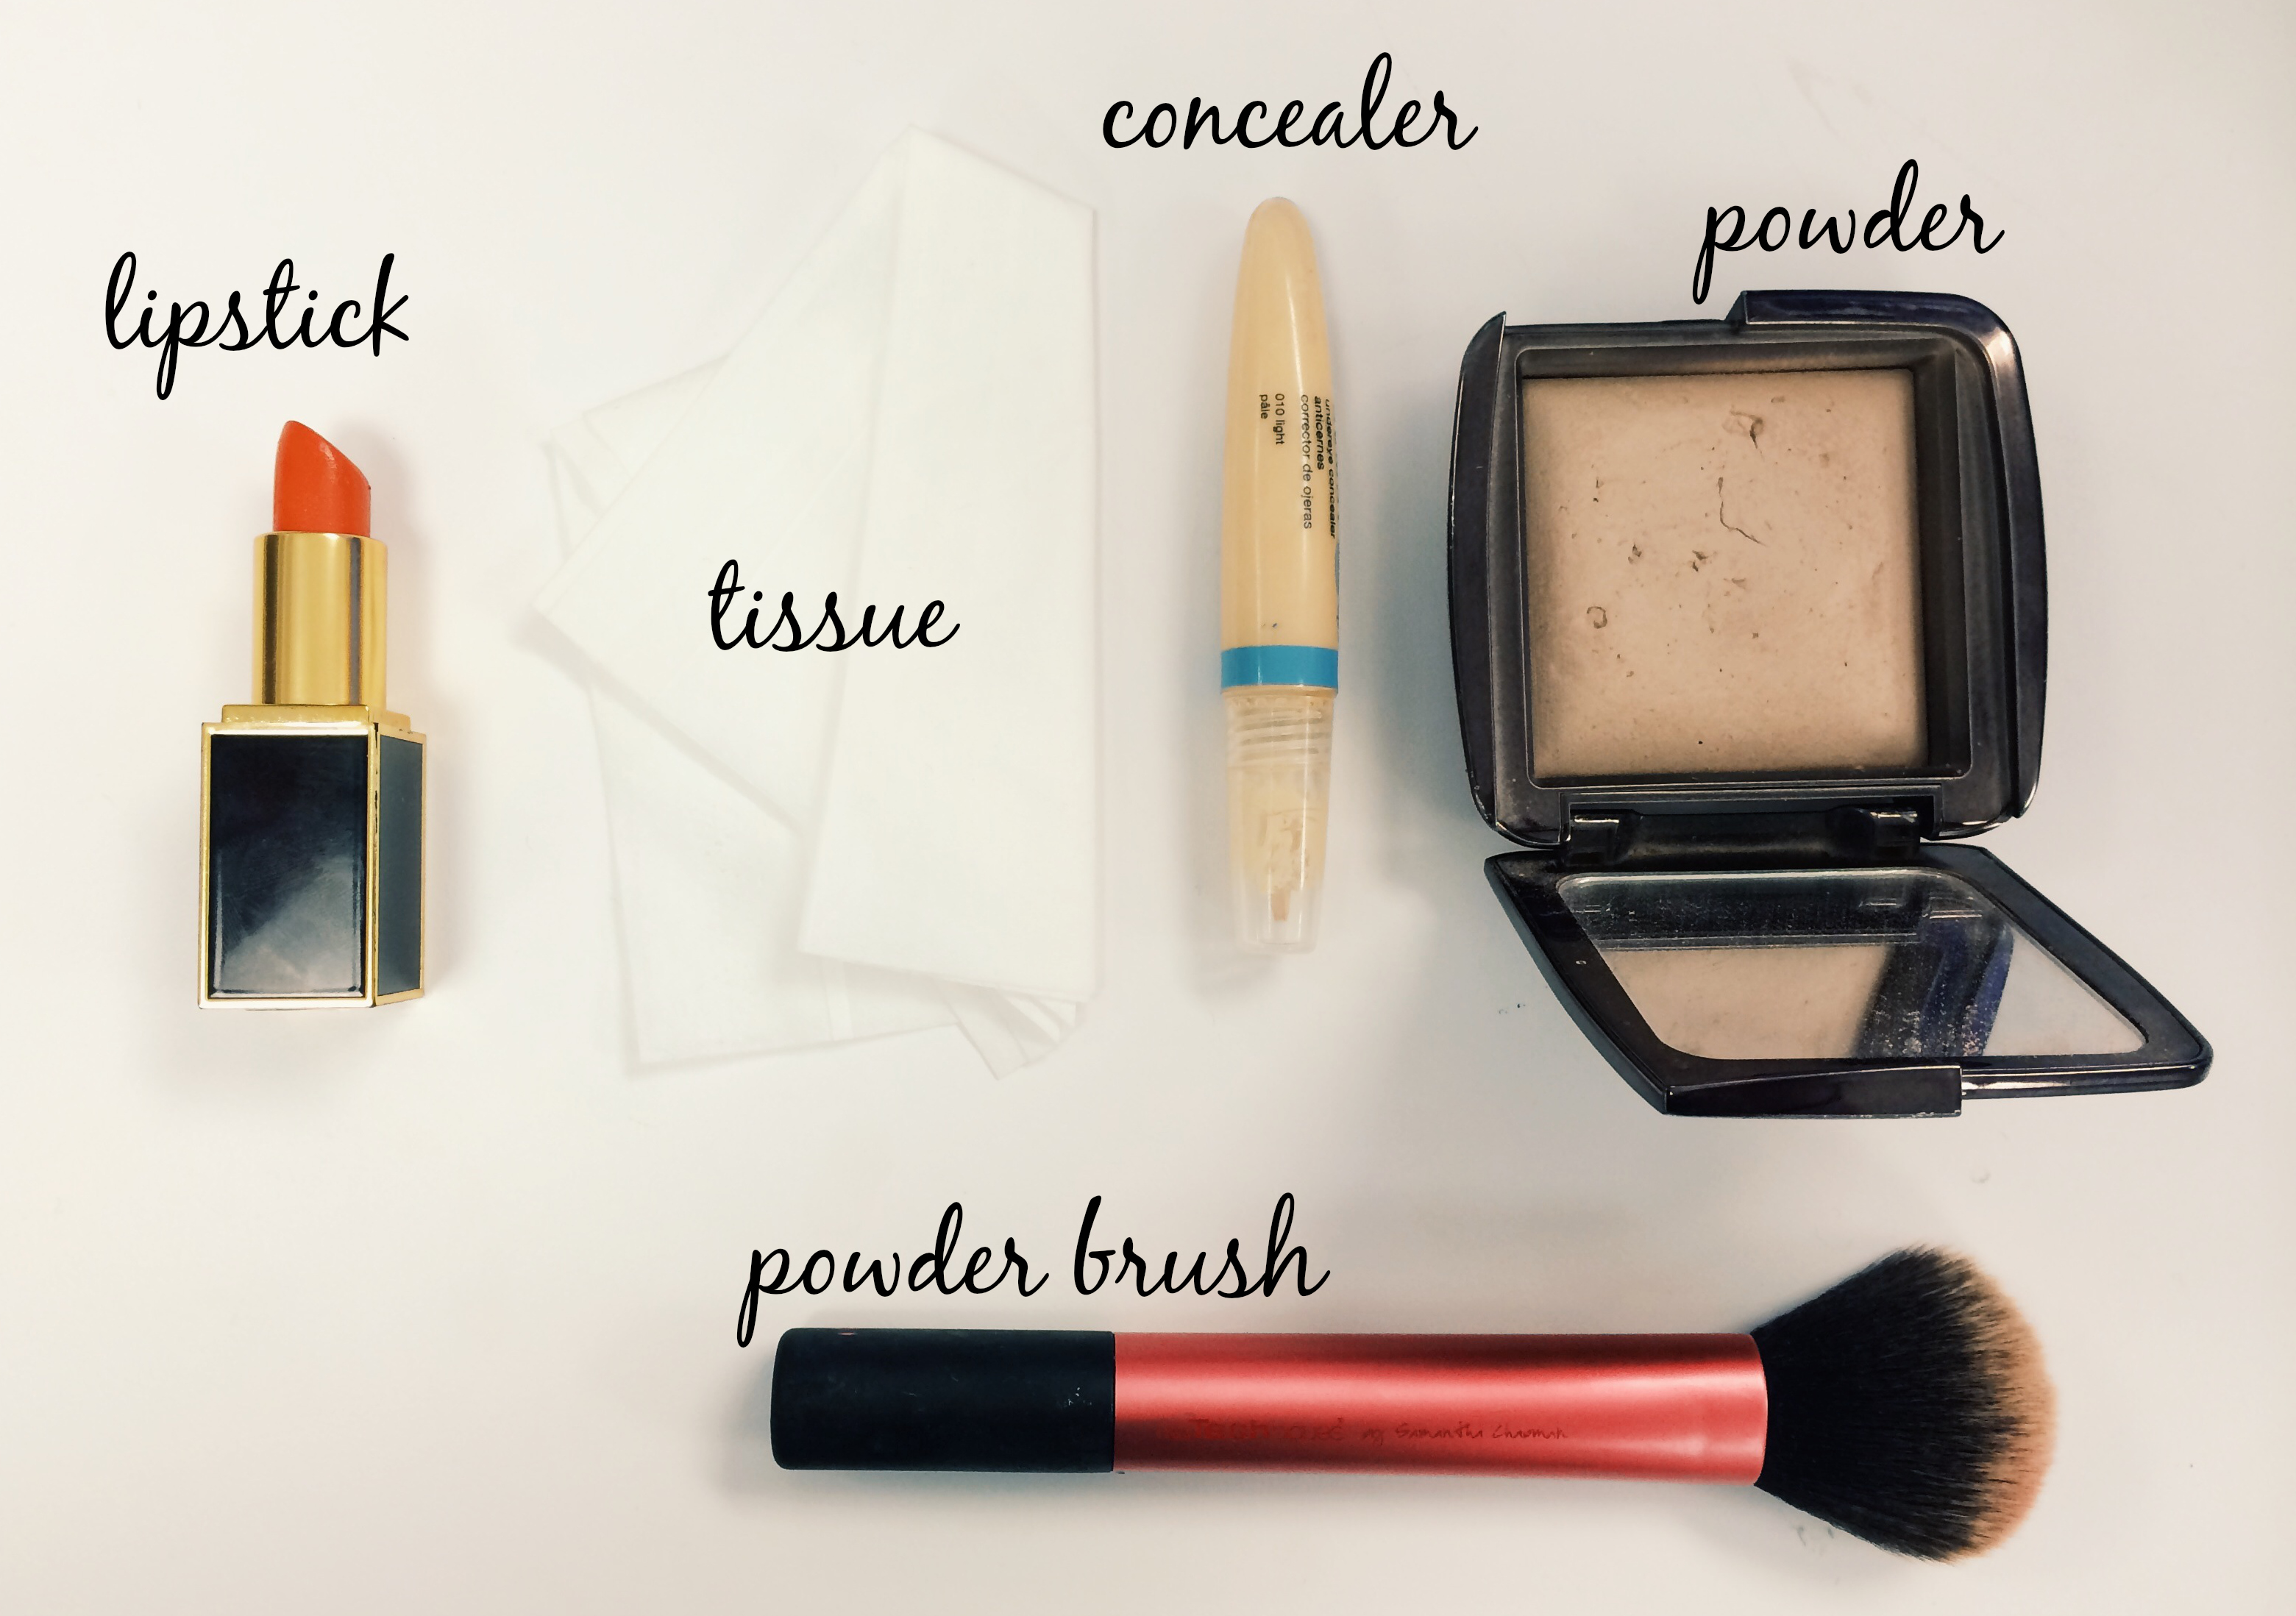 How do you make lipstick?